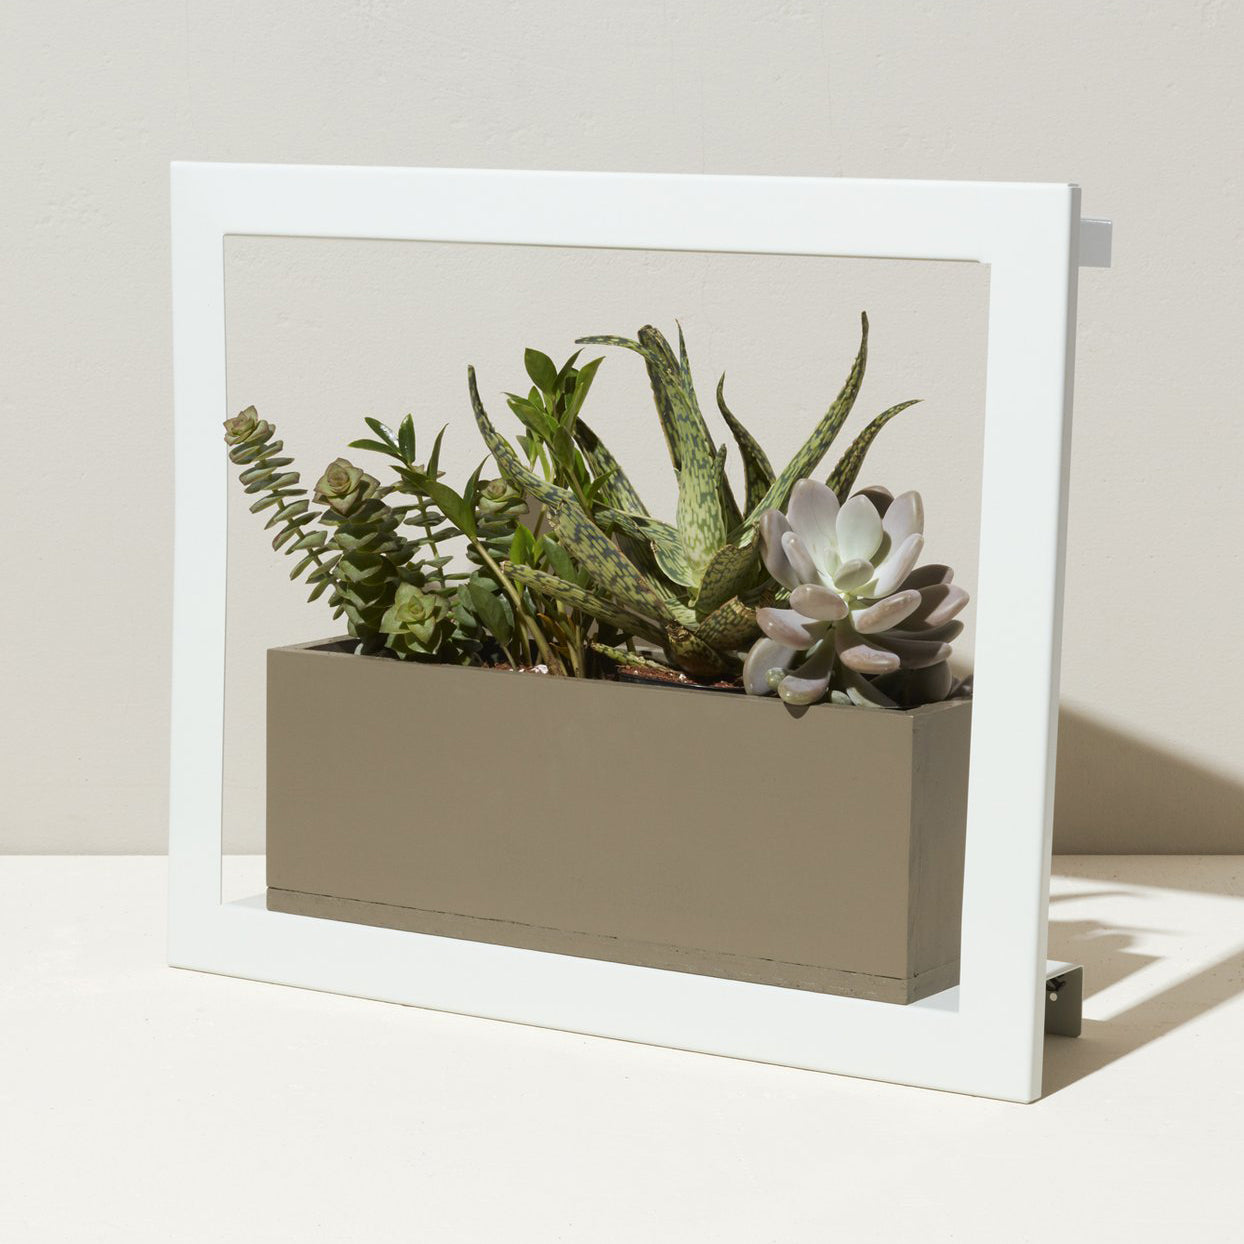 Wall-Mountable Metal Grow Frame with Grow Light